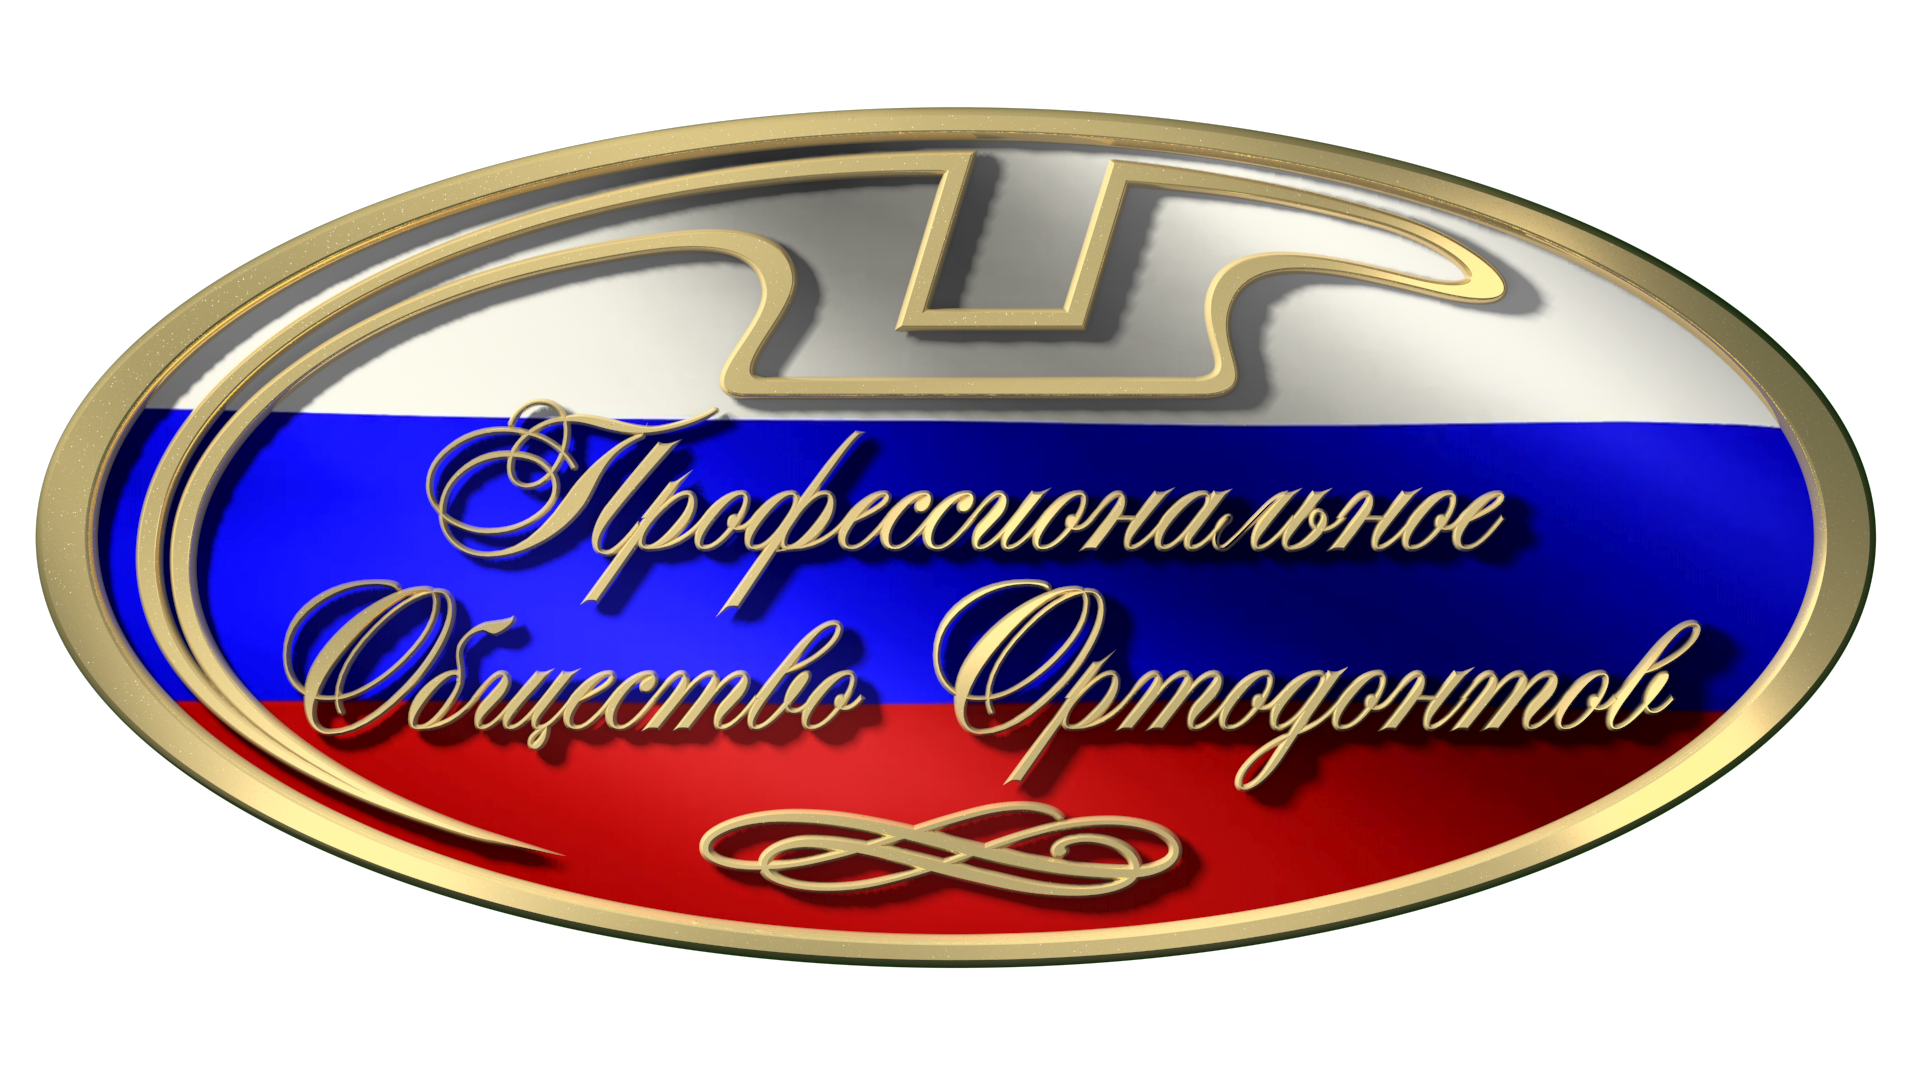 Профессиональное Общество Ортодонтов России